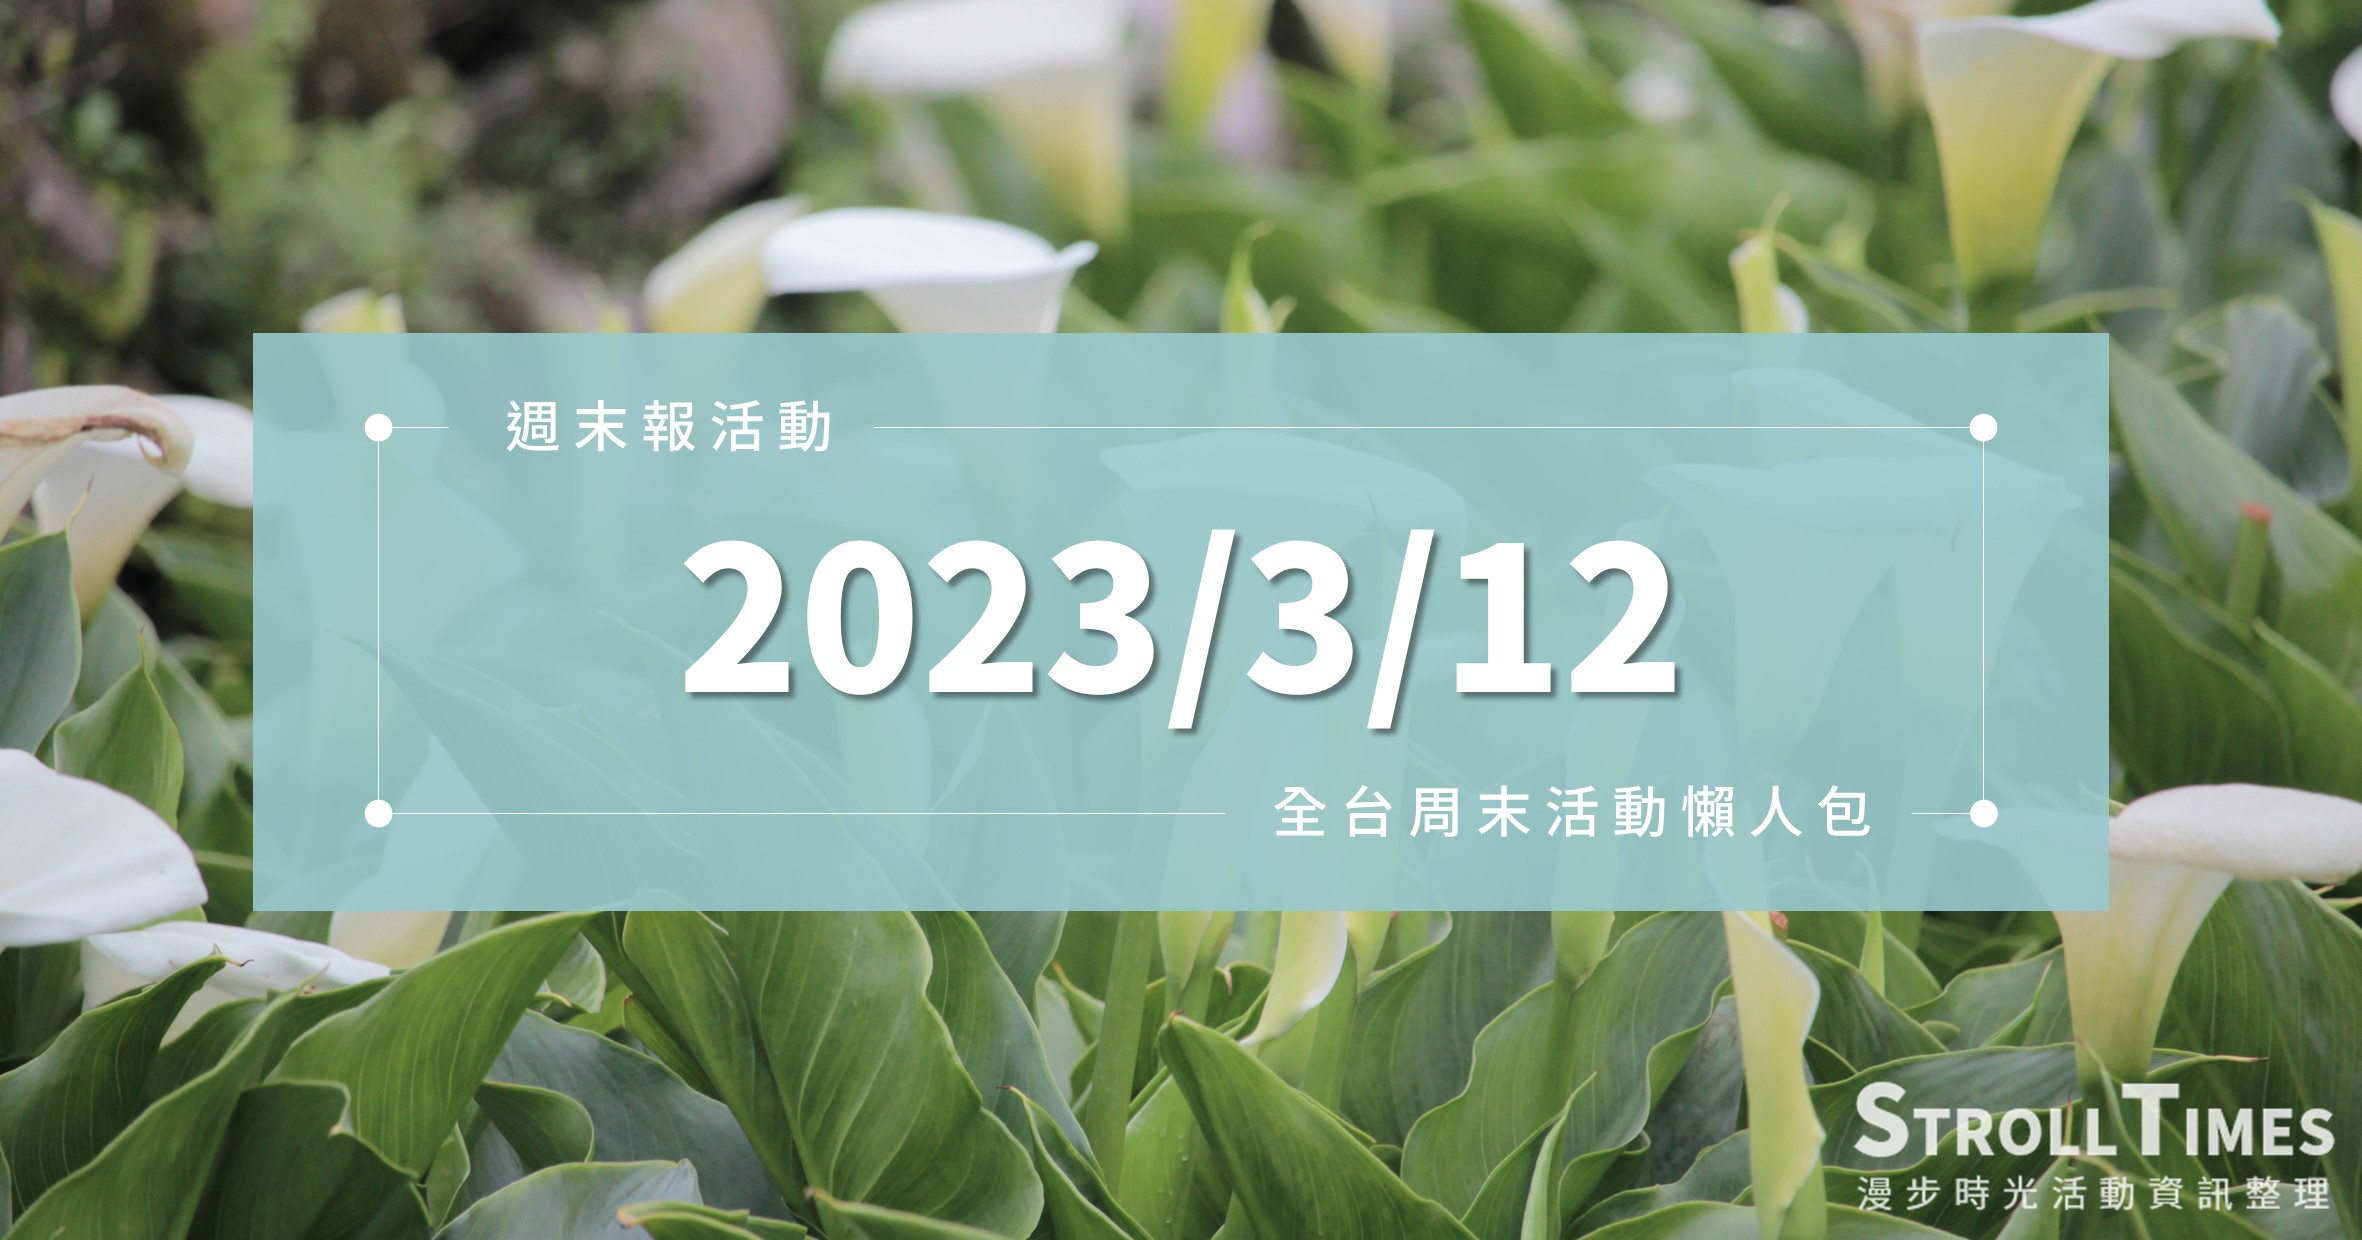 週末活動》全台「2023/3/12」週日活動整理 @漫步時光